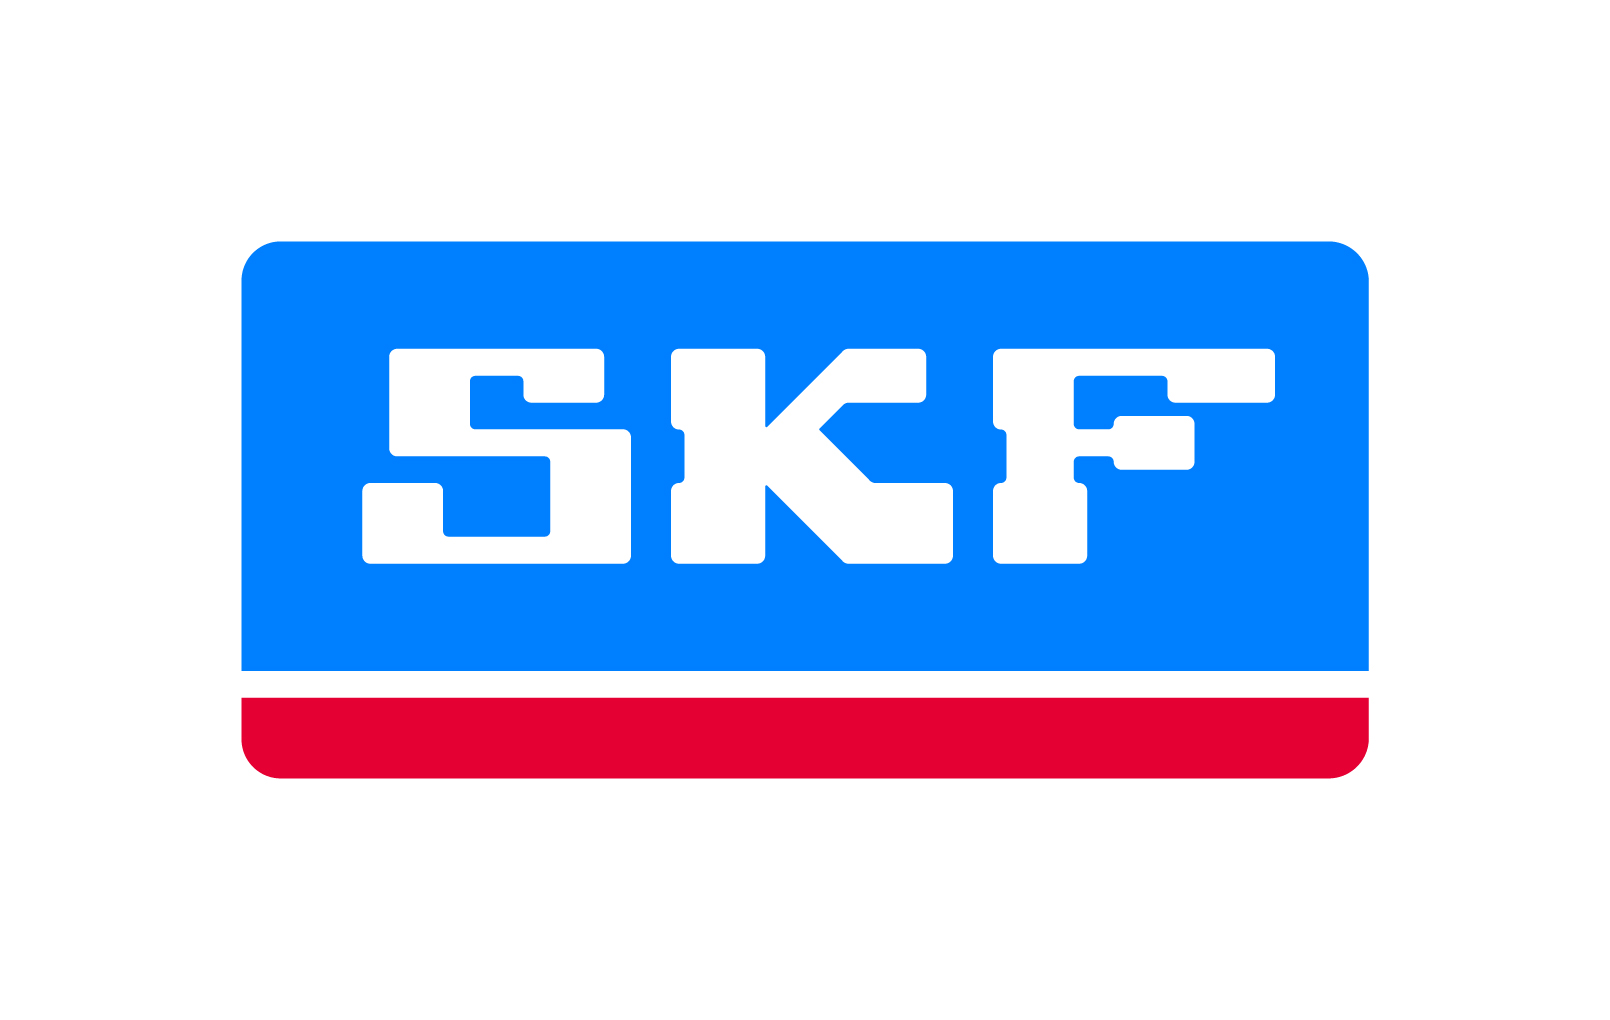 GO PNEU - logo SKF